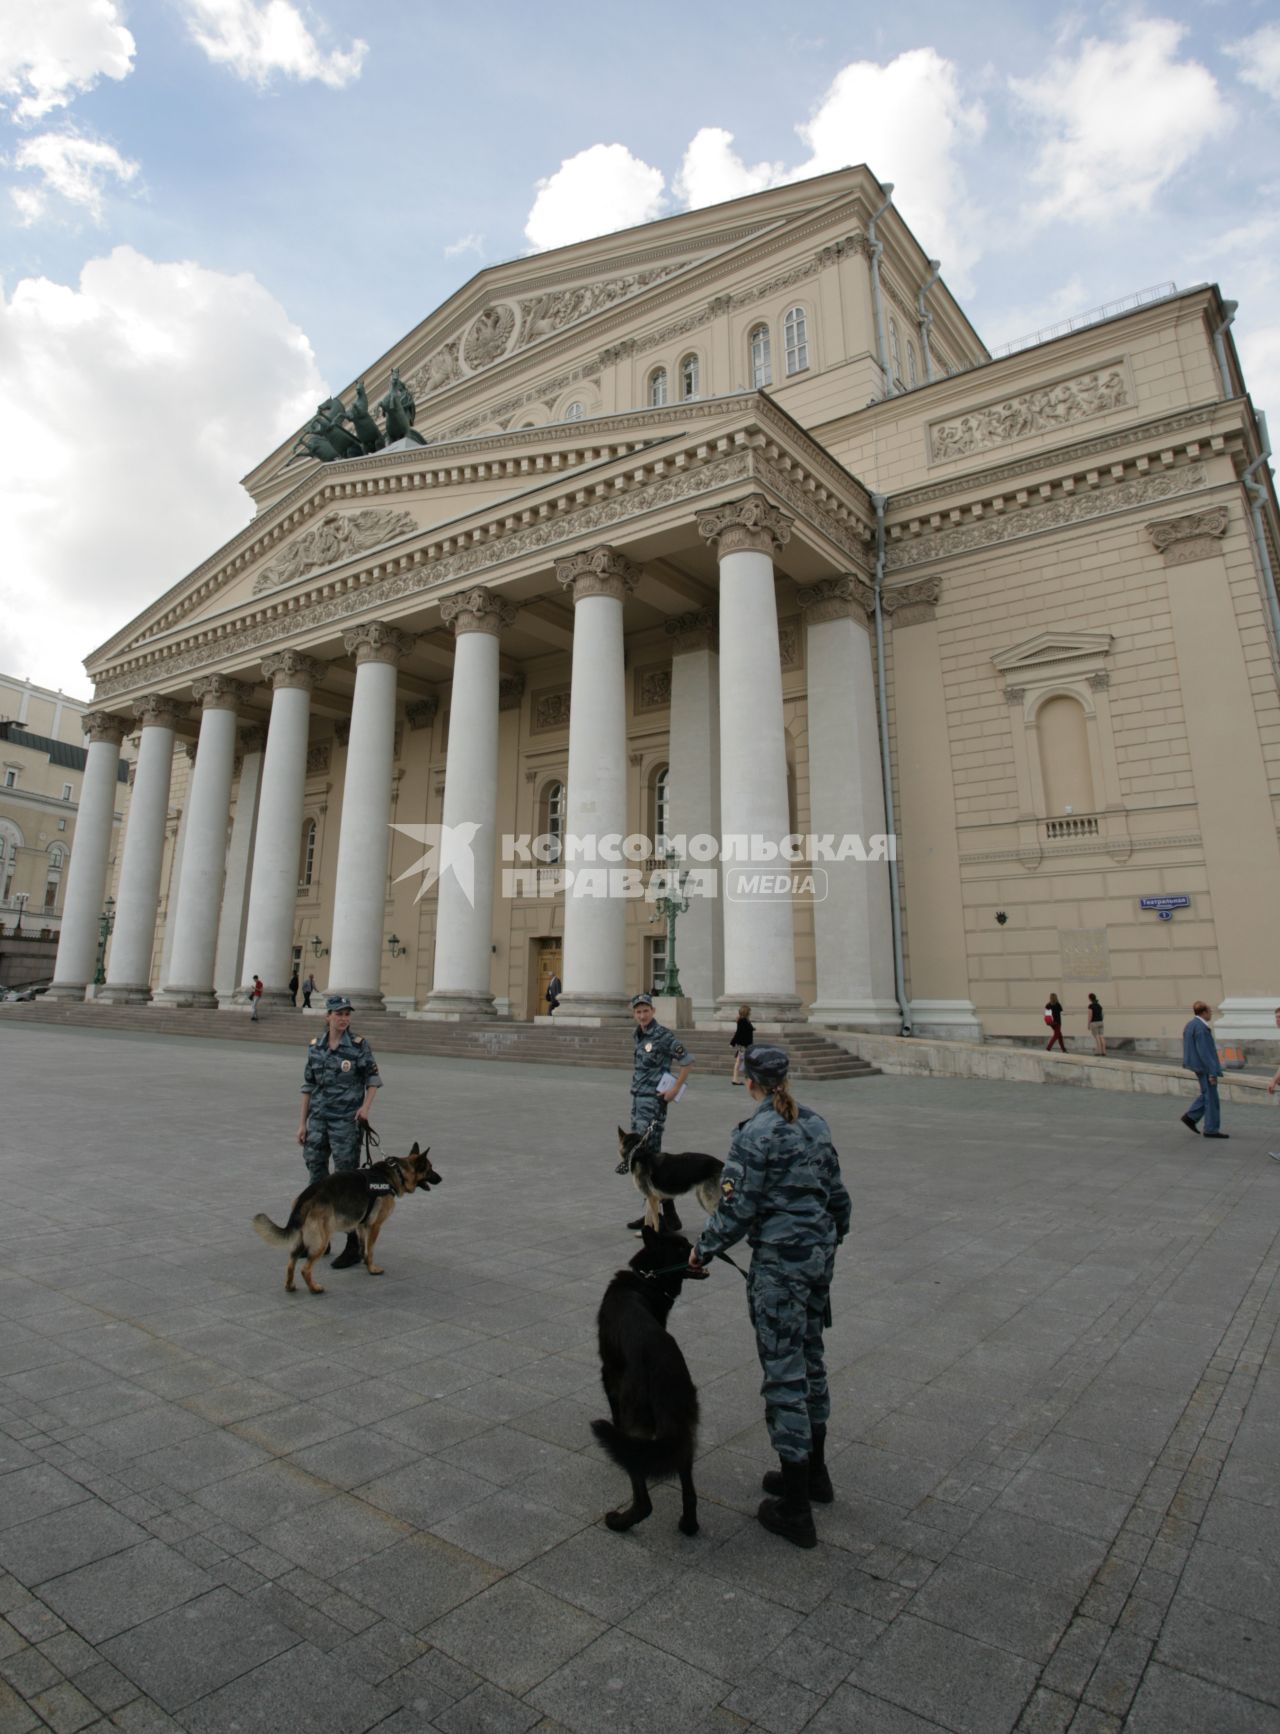 Театральная площадь. На снимке: сотрудники правохранительных органов со служебными собаками у здания Большого театра.